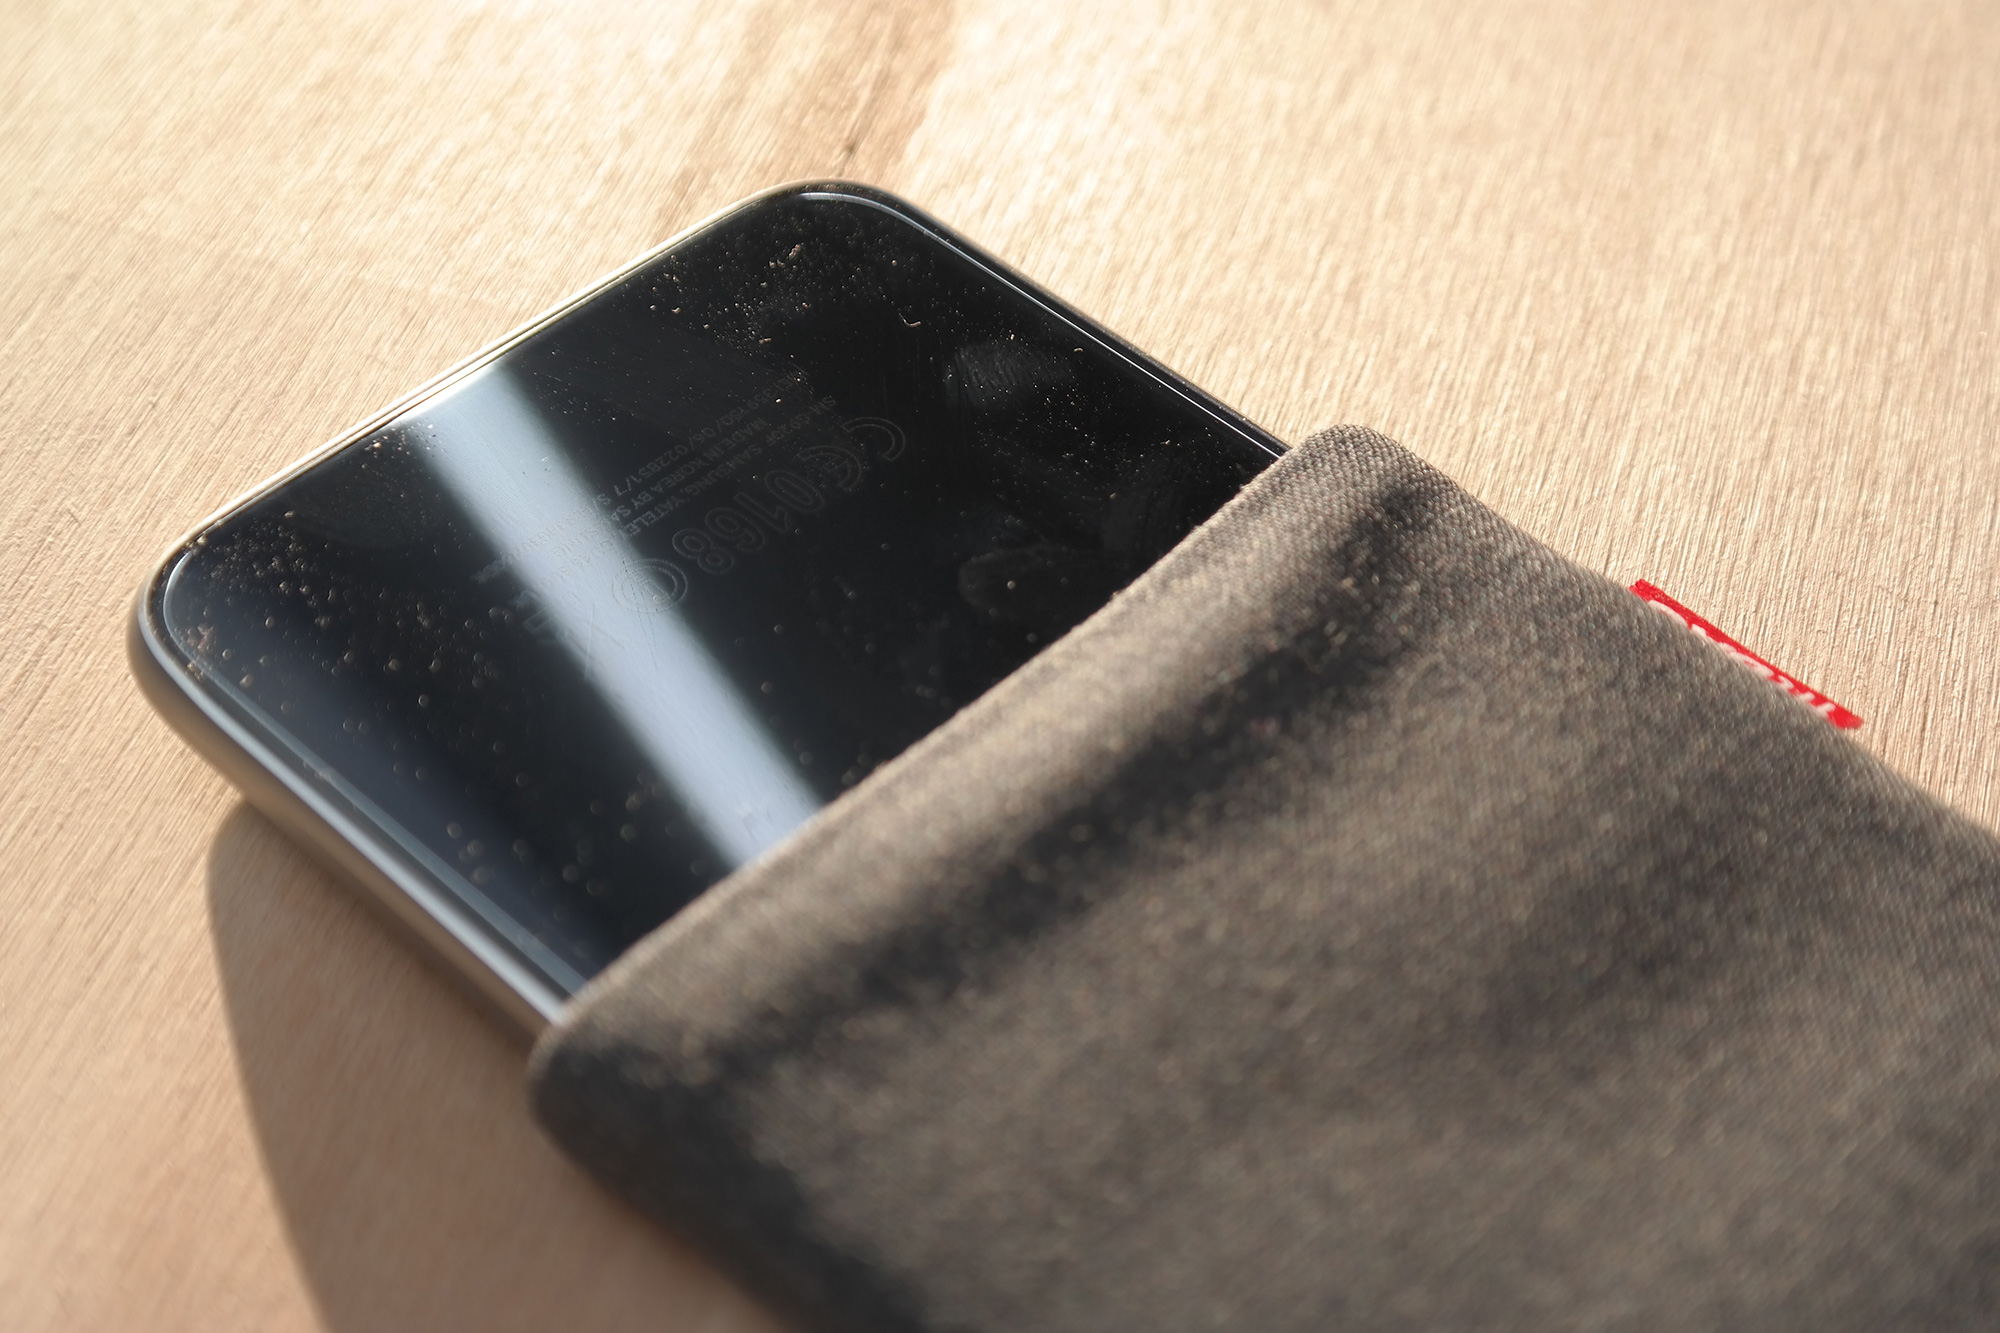 fitBAG Jive Blau Handytasche Tasche aus Textil-Stoff mit Microfaserinnenfutter für Samsung Galaxy S7 Edge SM-G935F Hülle mit Reinigungsfunktion Made in Germany